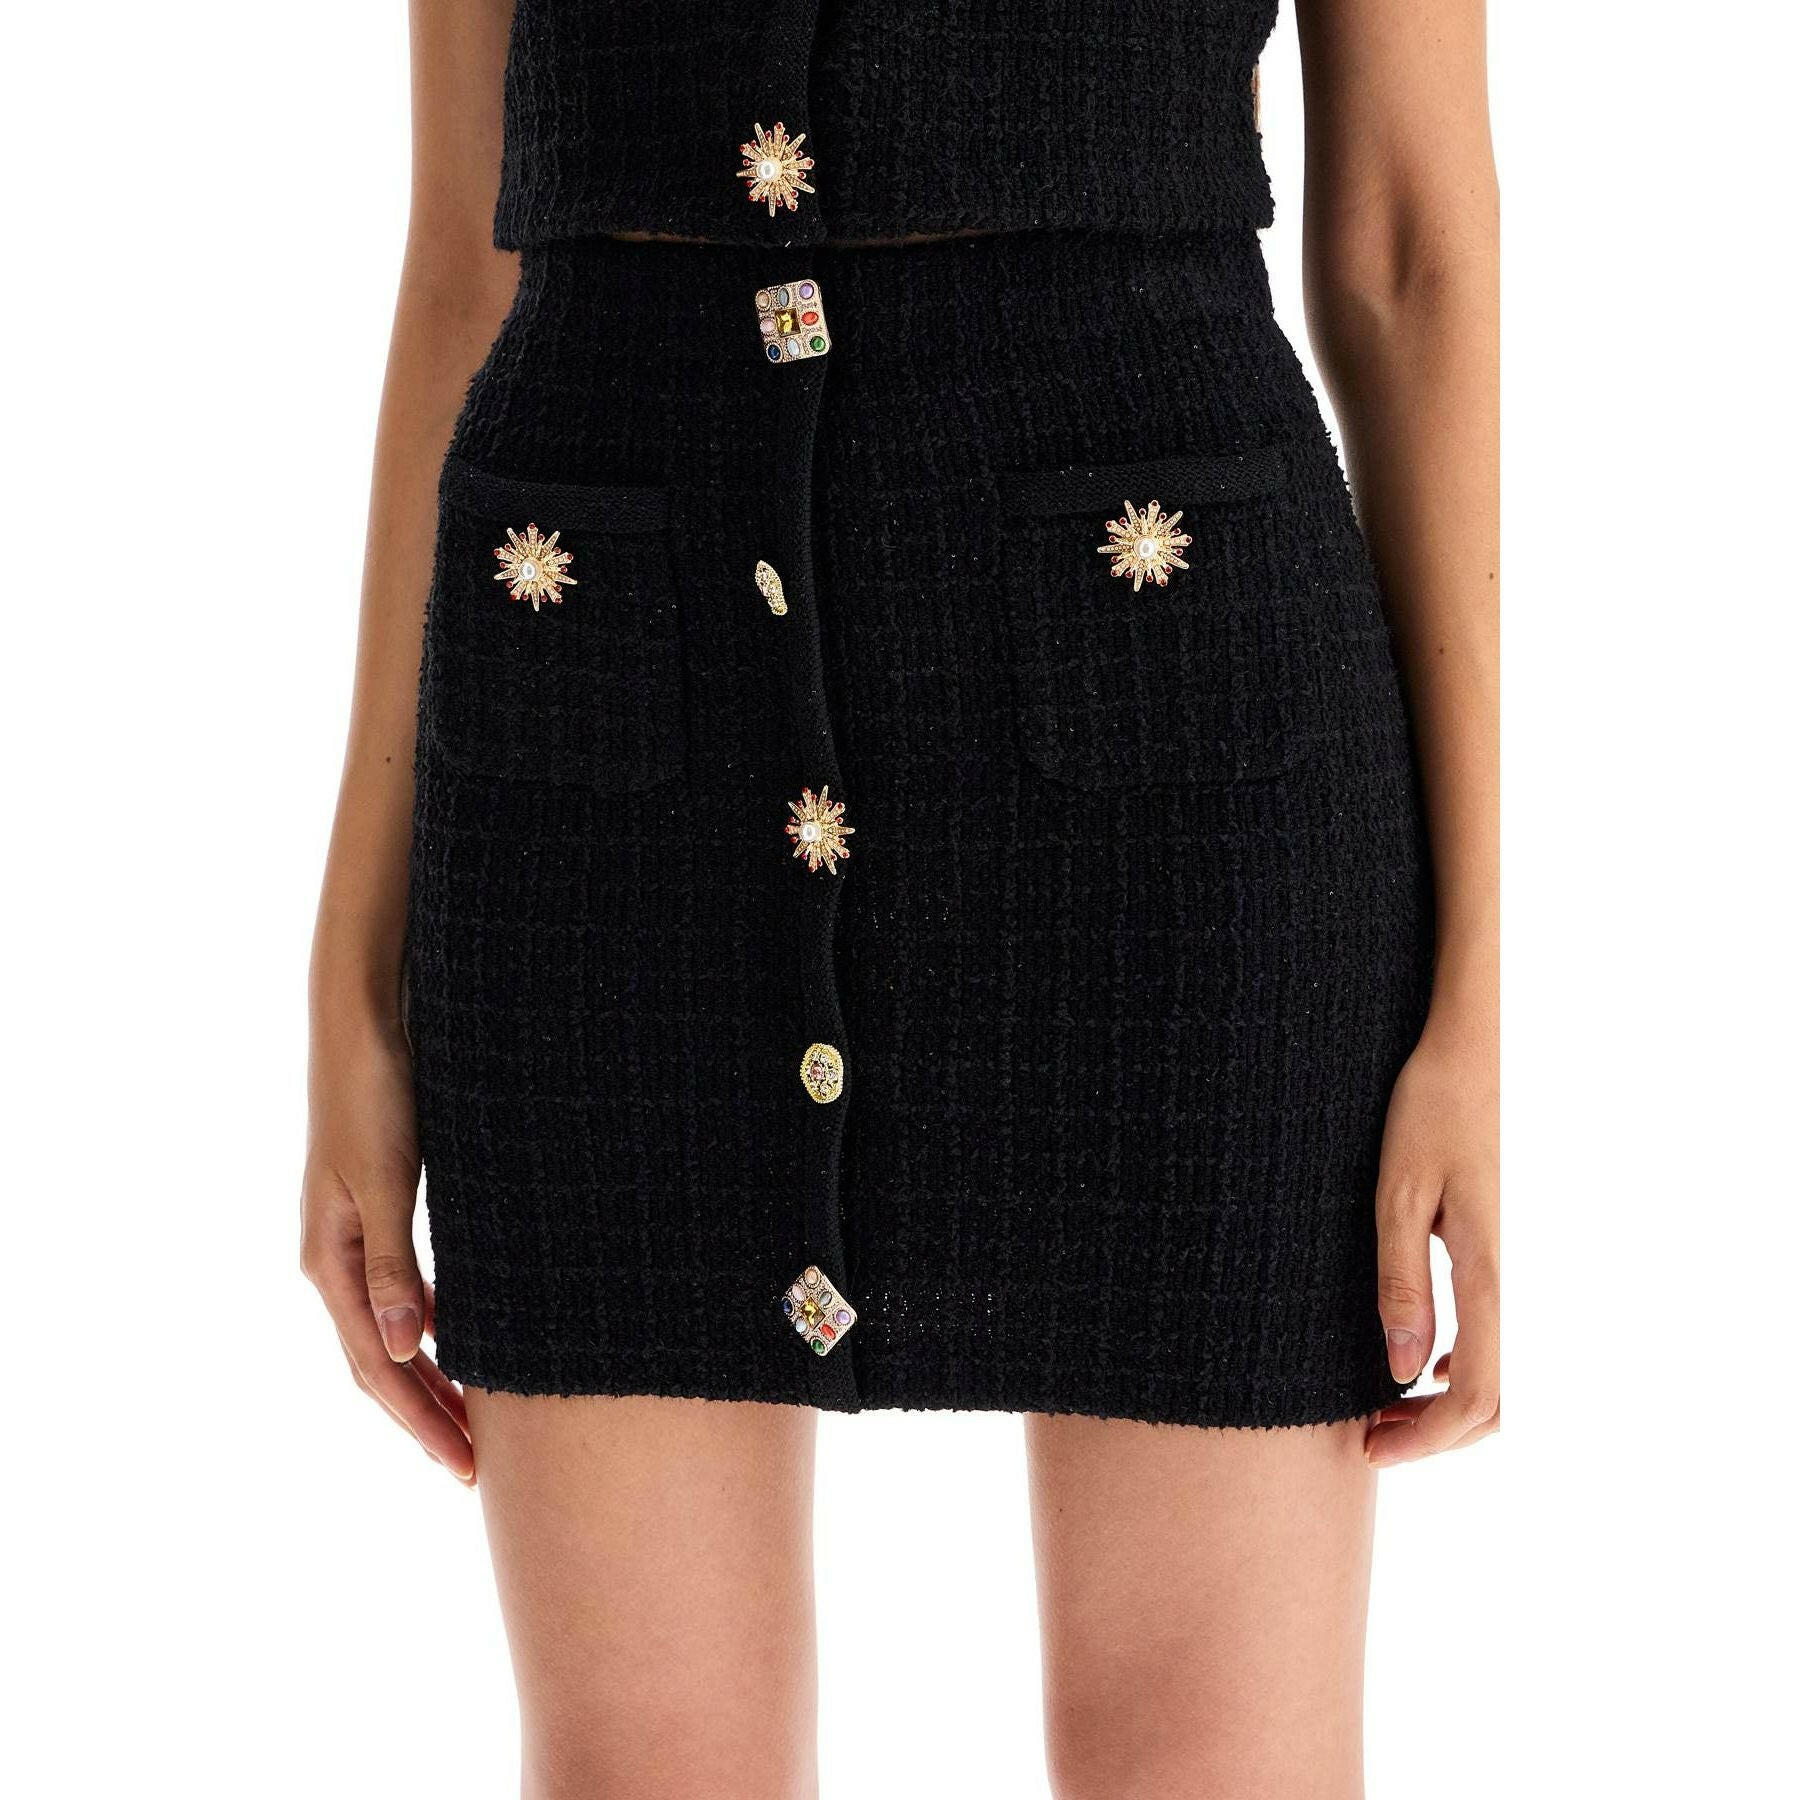 Jewel Button Knit Mini Skirt.